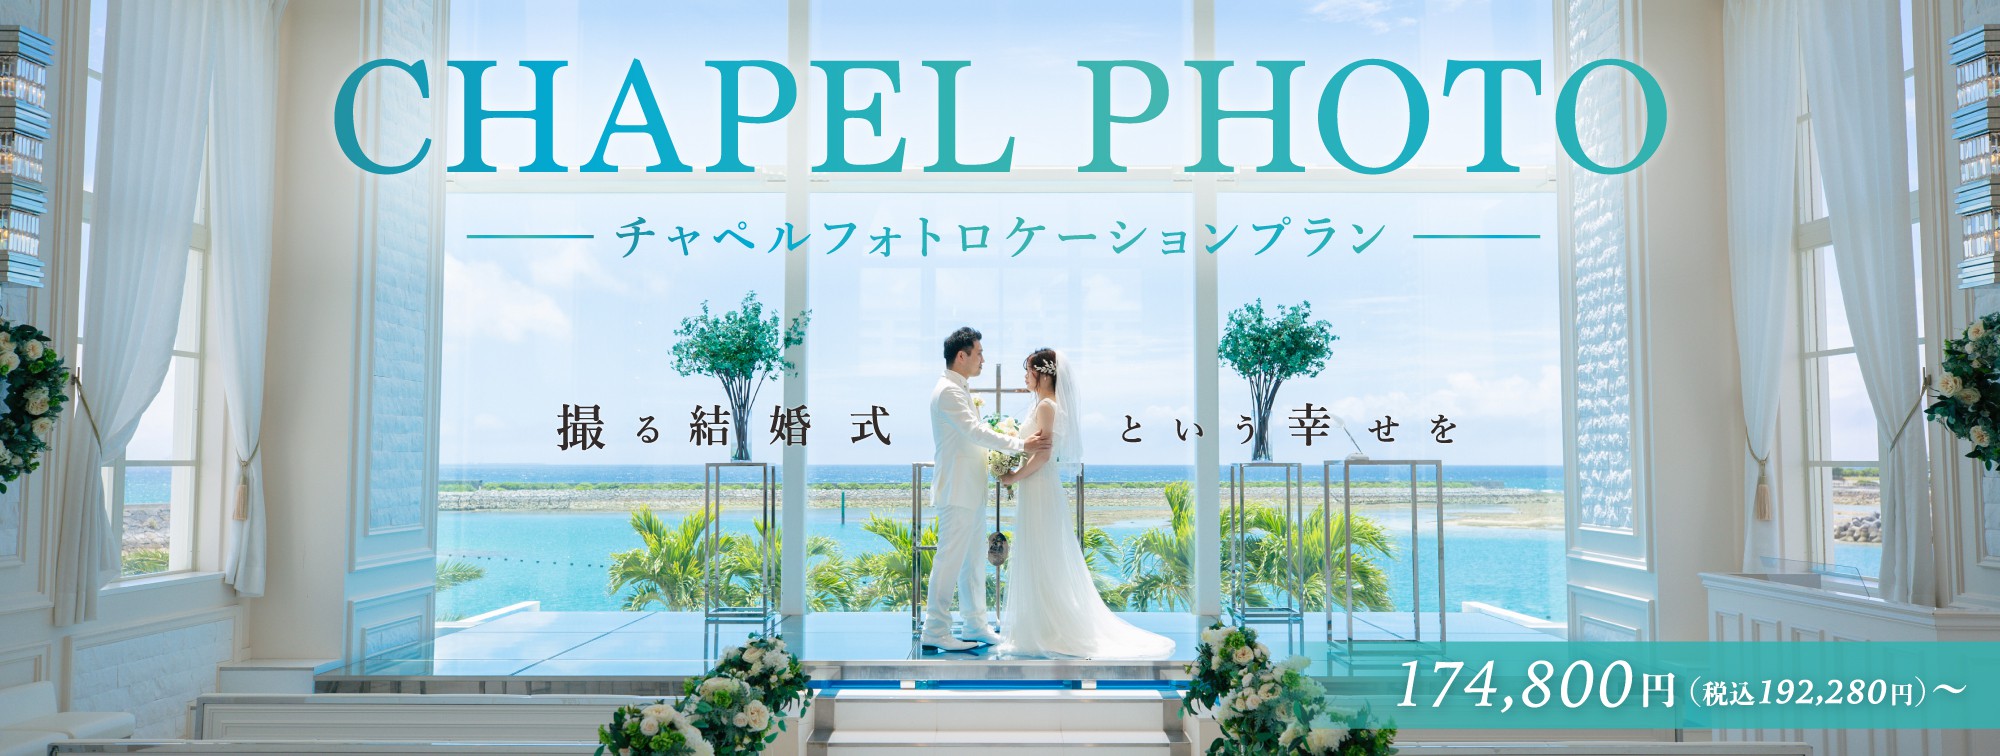 【SUNSチャペルフォトロケーションプラン】憧れの沖縄のチャペルで、撮る結婚式という幸せを。